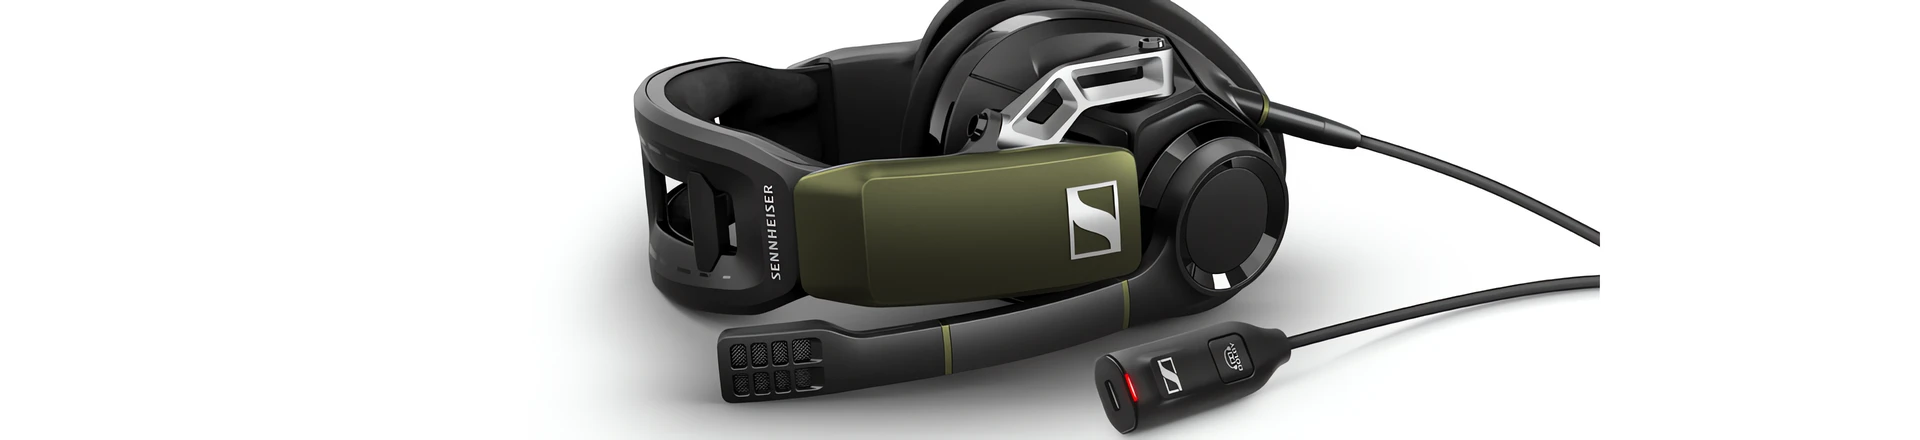 Sennheiser GSP 550 - Nowy zestaw słuchawkowy dla graczy z dźwiękiem 7.1